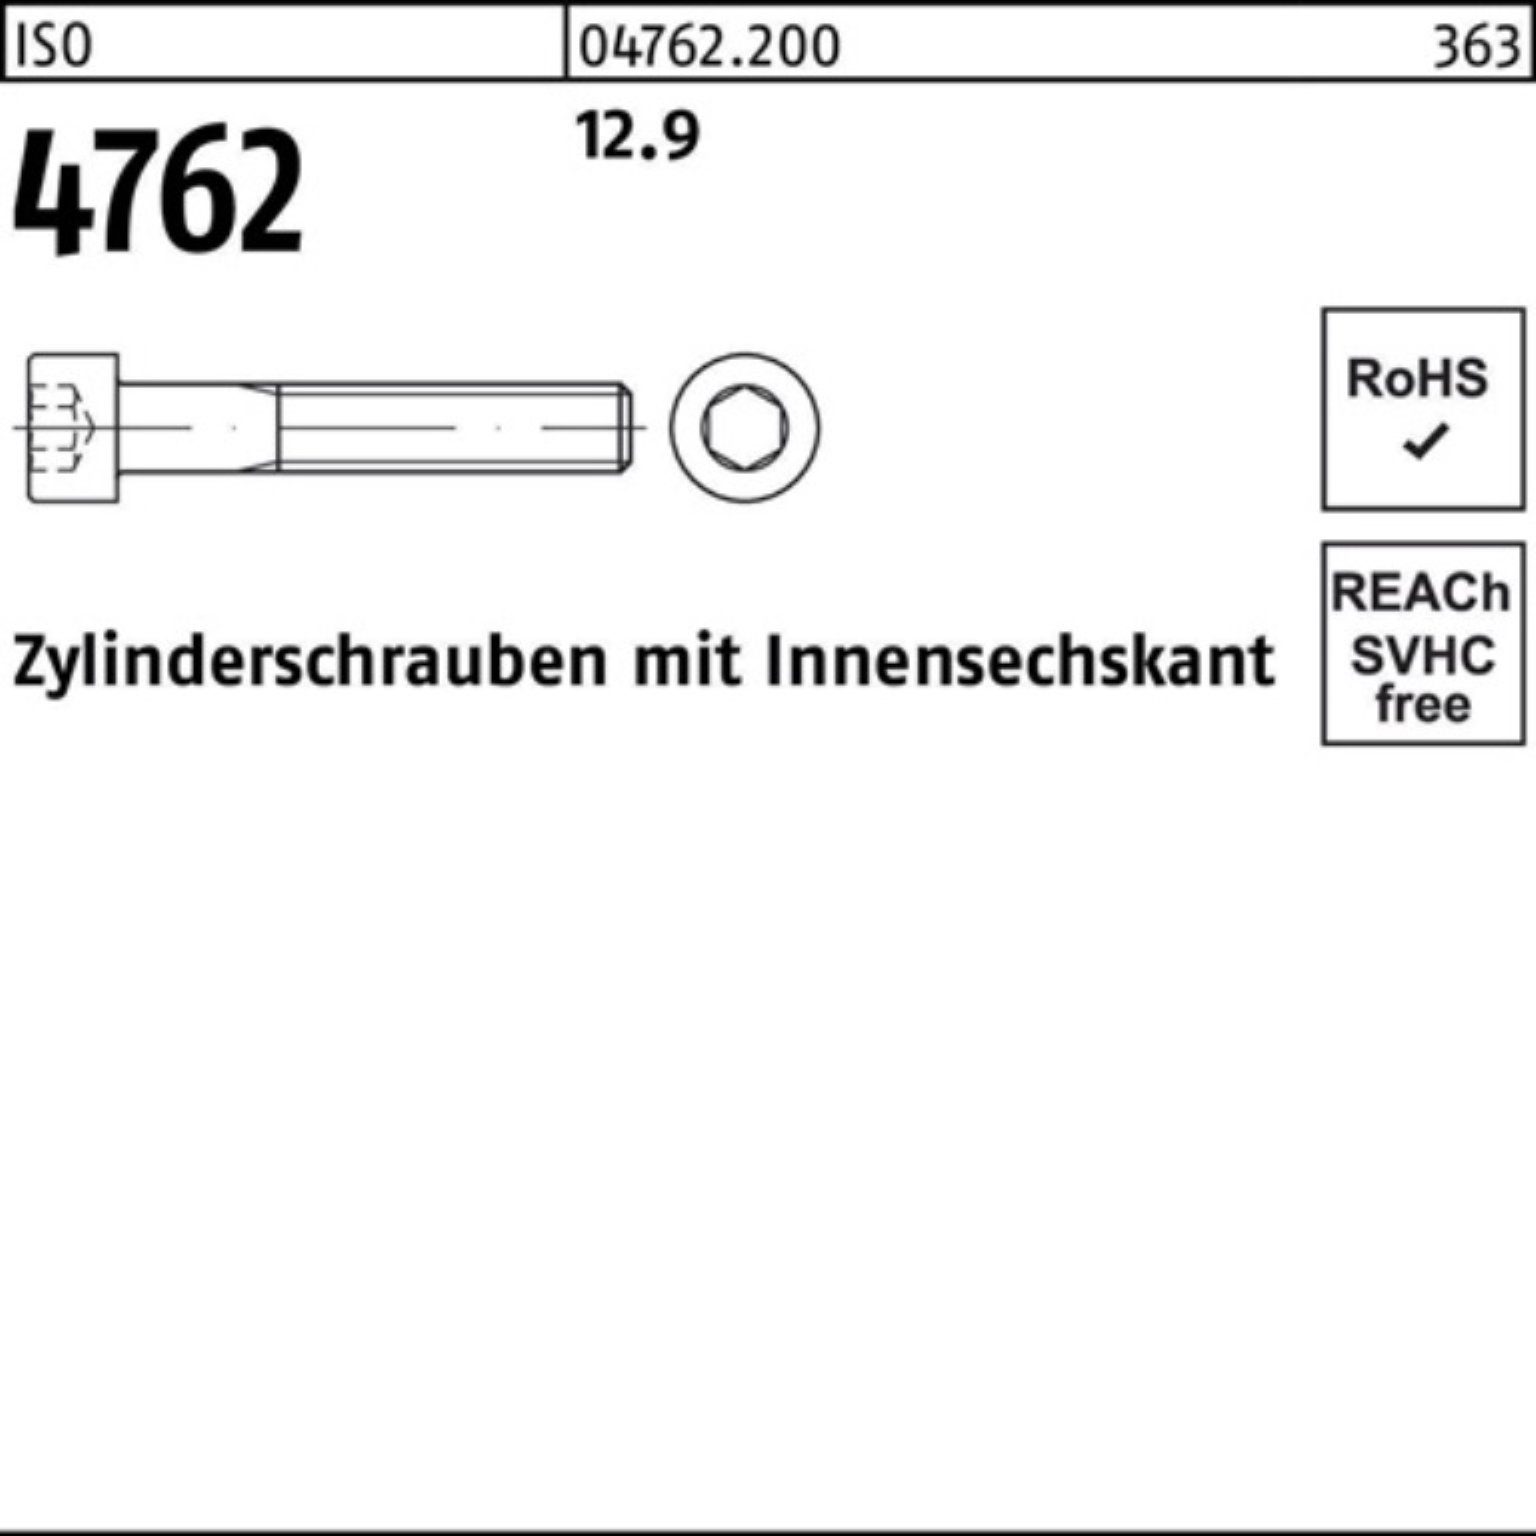 Reyher Zylinderschraube 100er Pack Innen-6kt ISO I Stück Zylinderschraube 90 1 12.9 4762 M36x